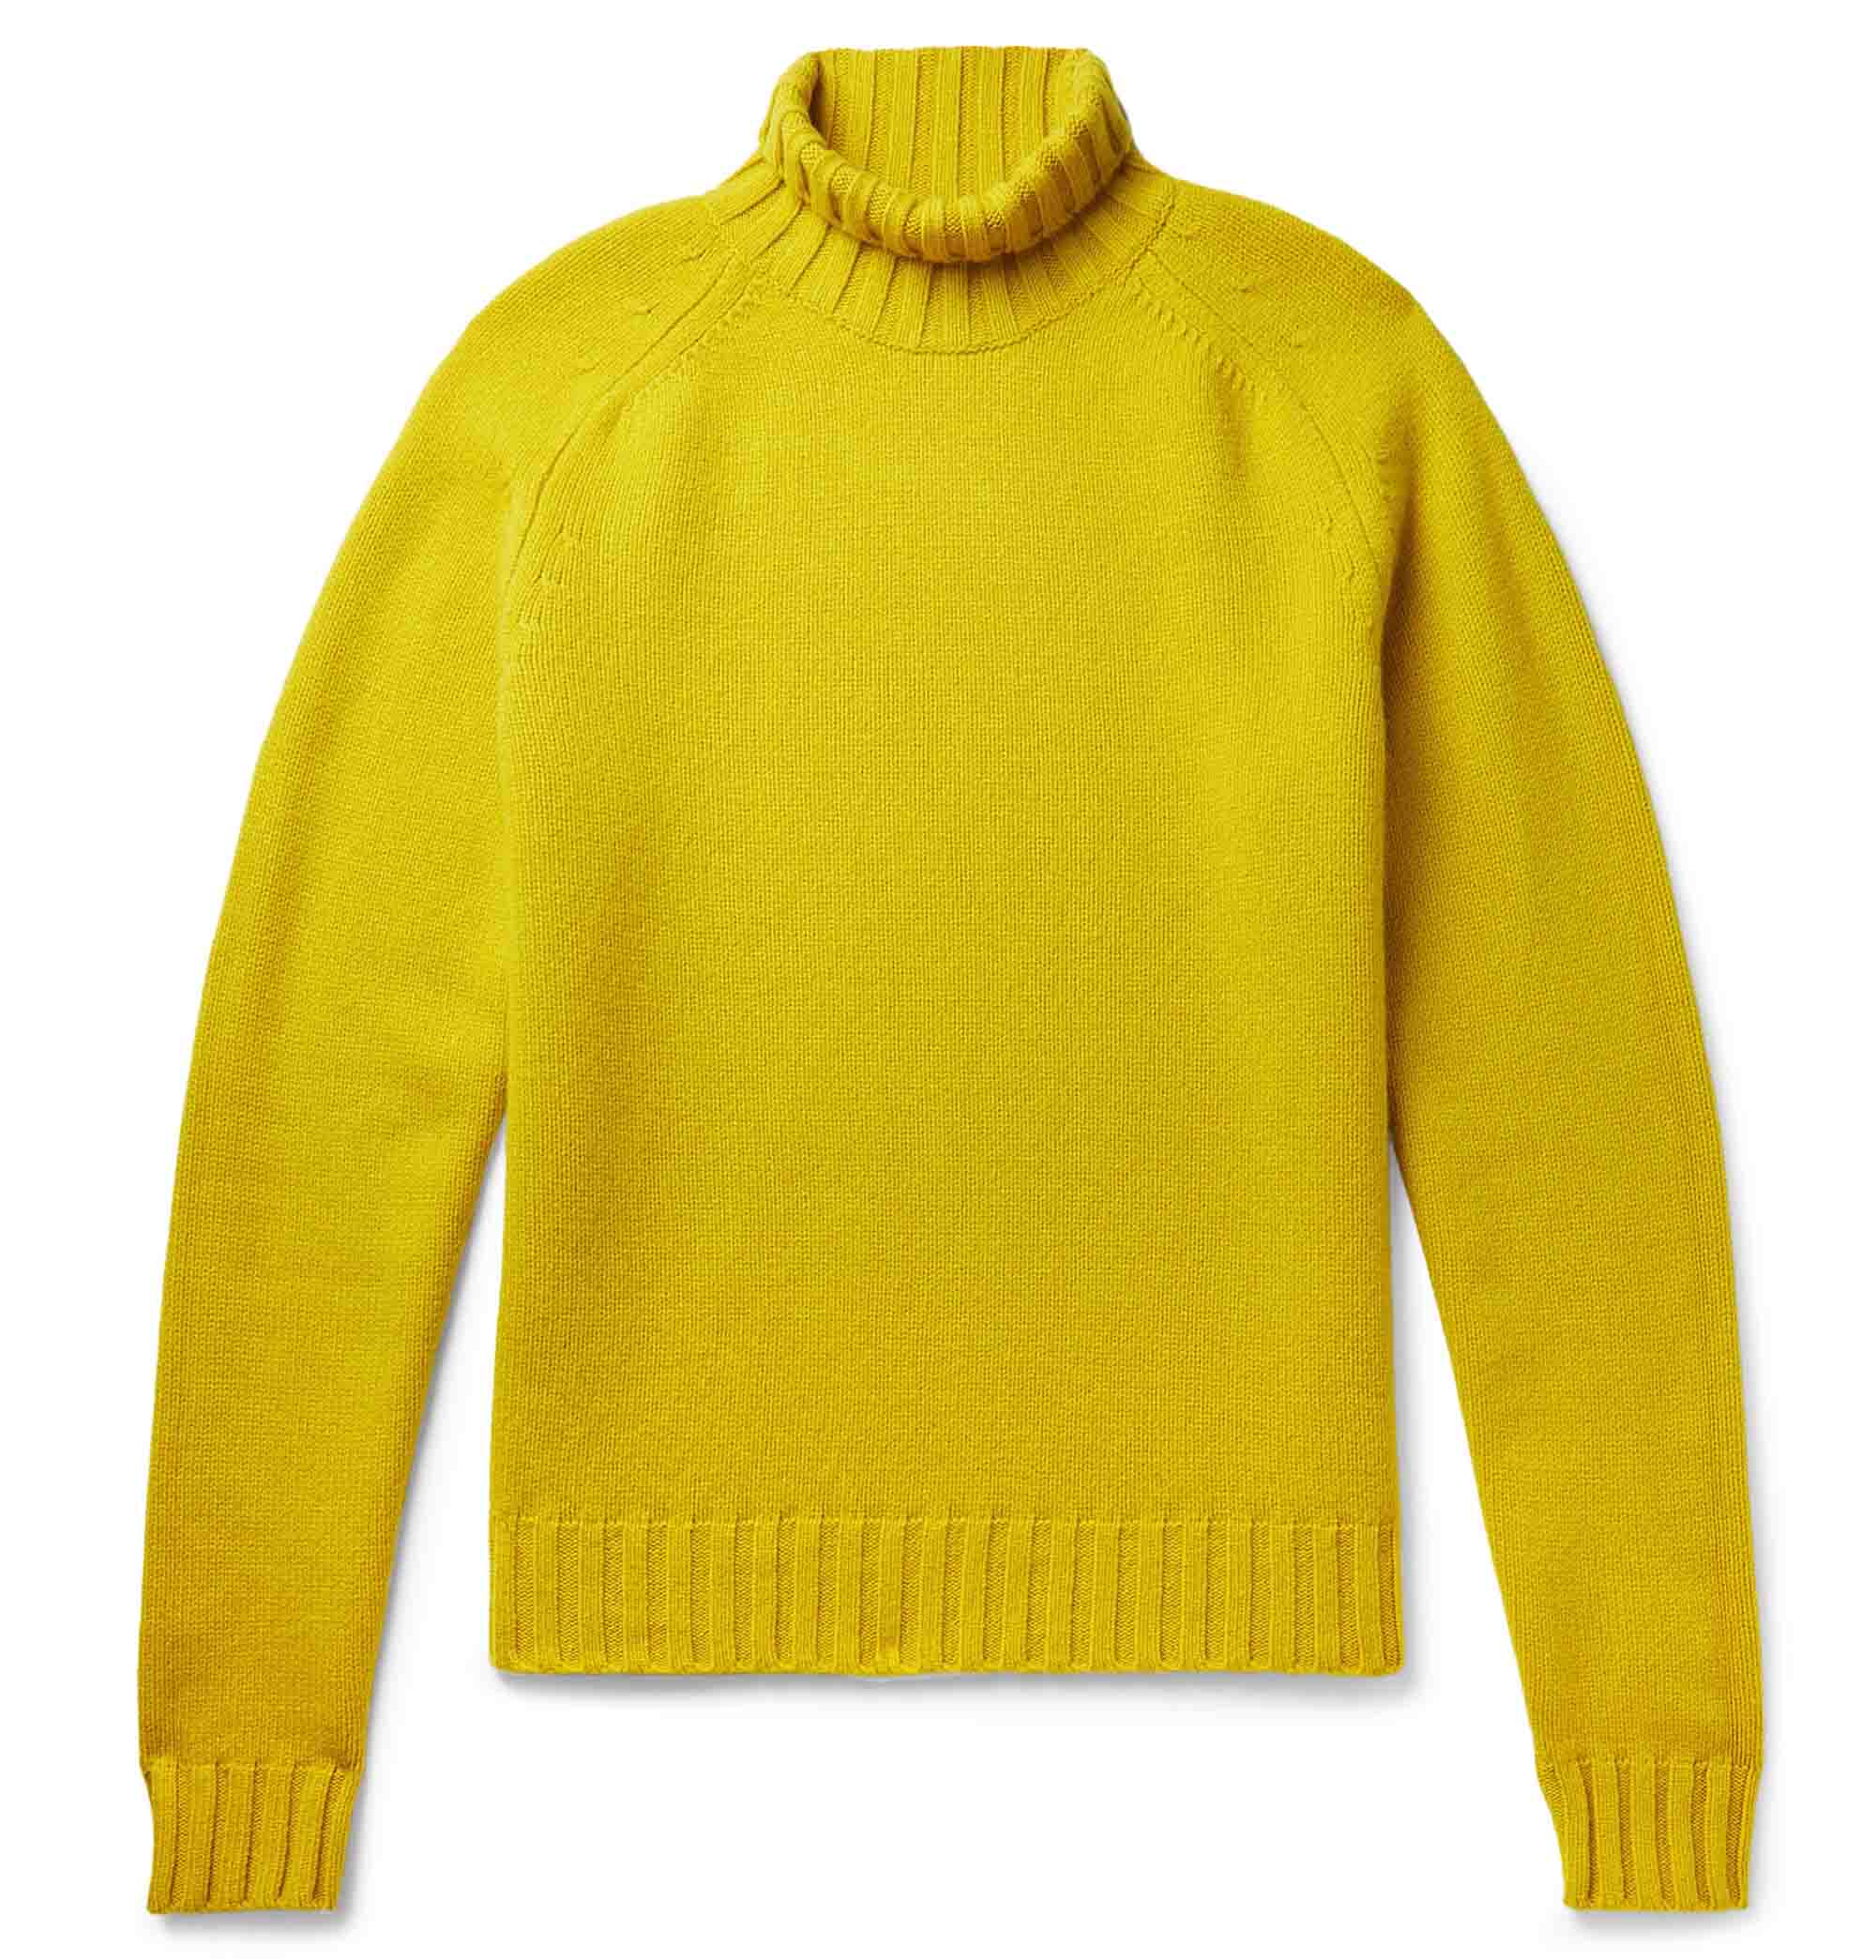 Pullover-Trends für Männer